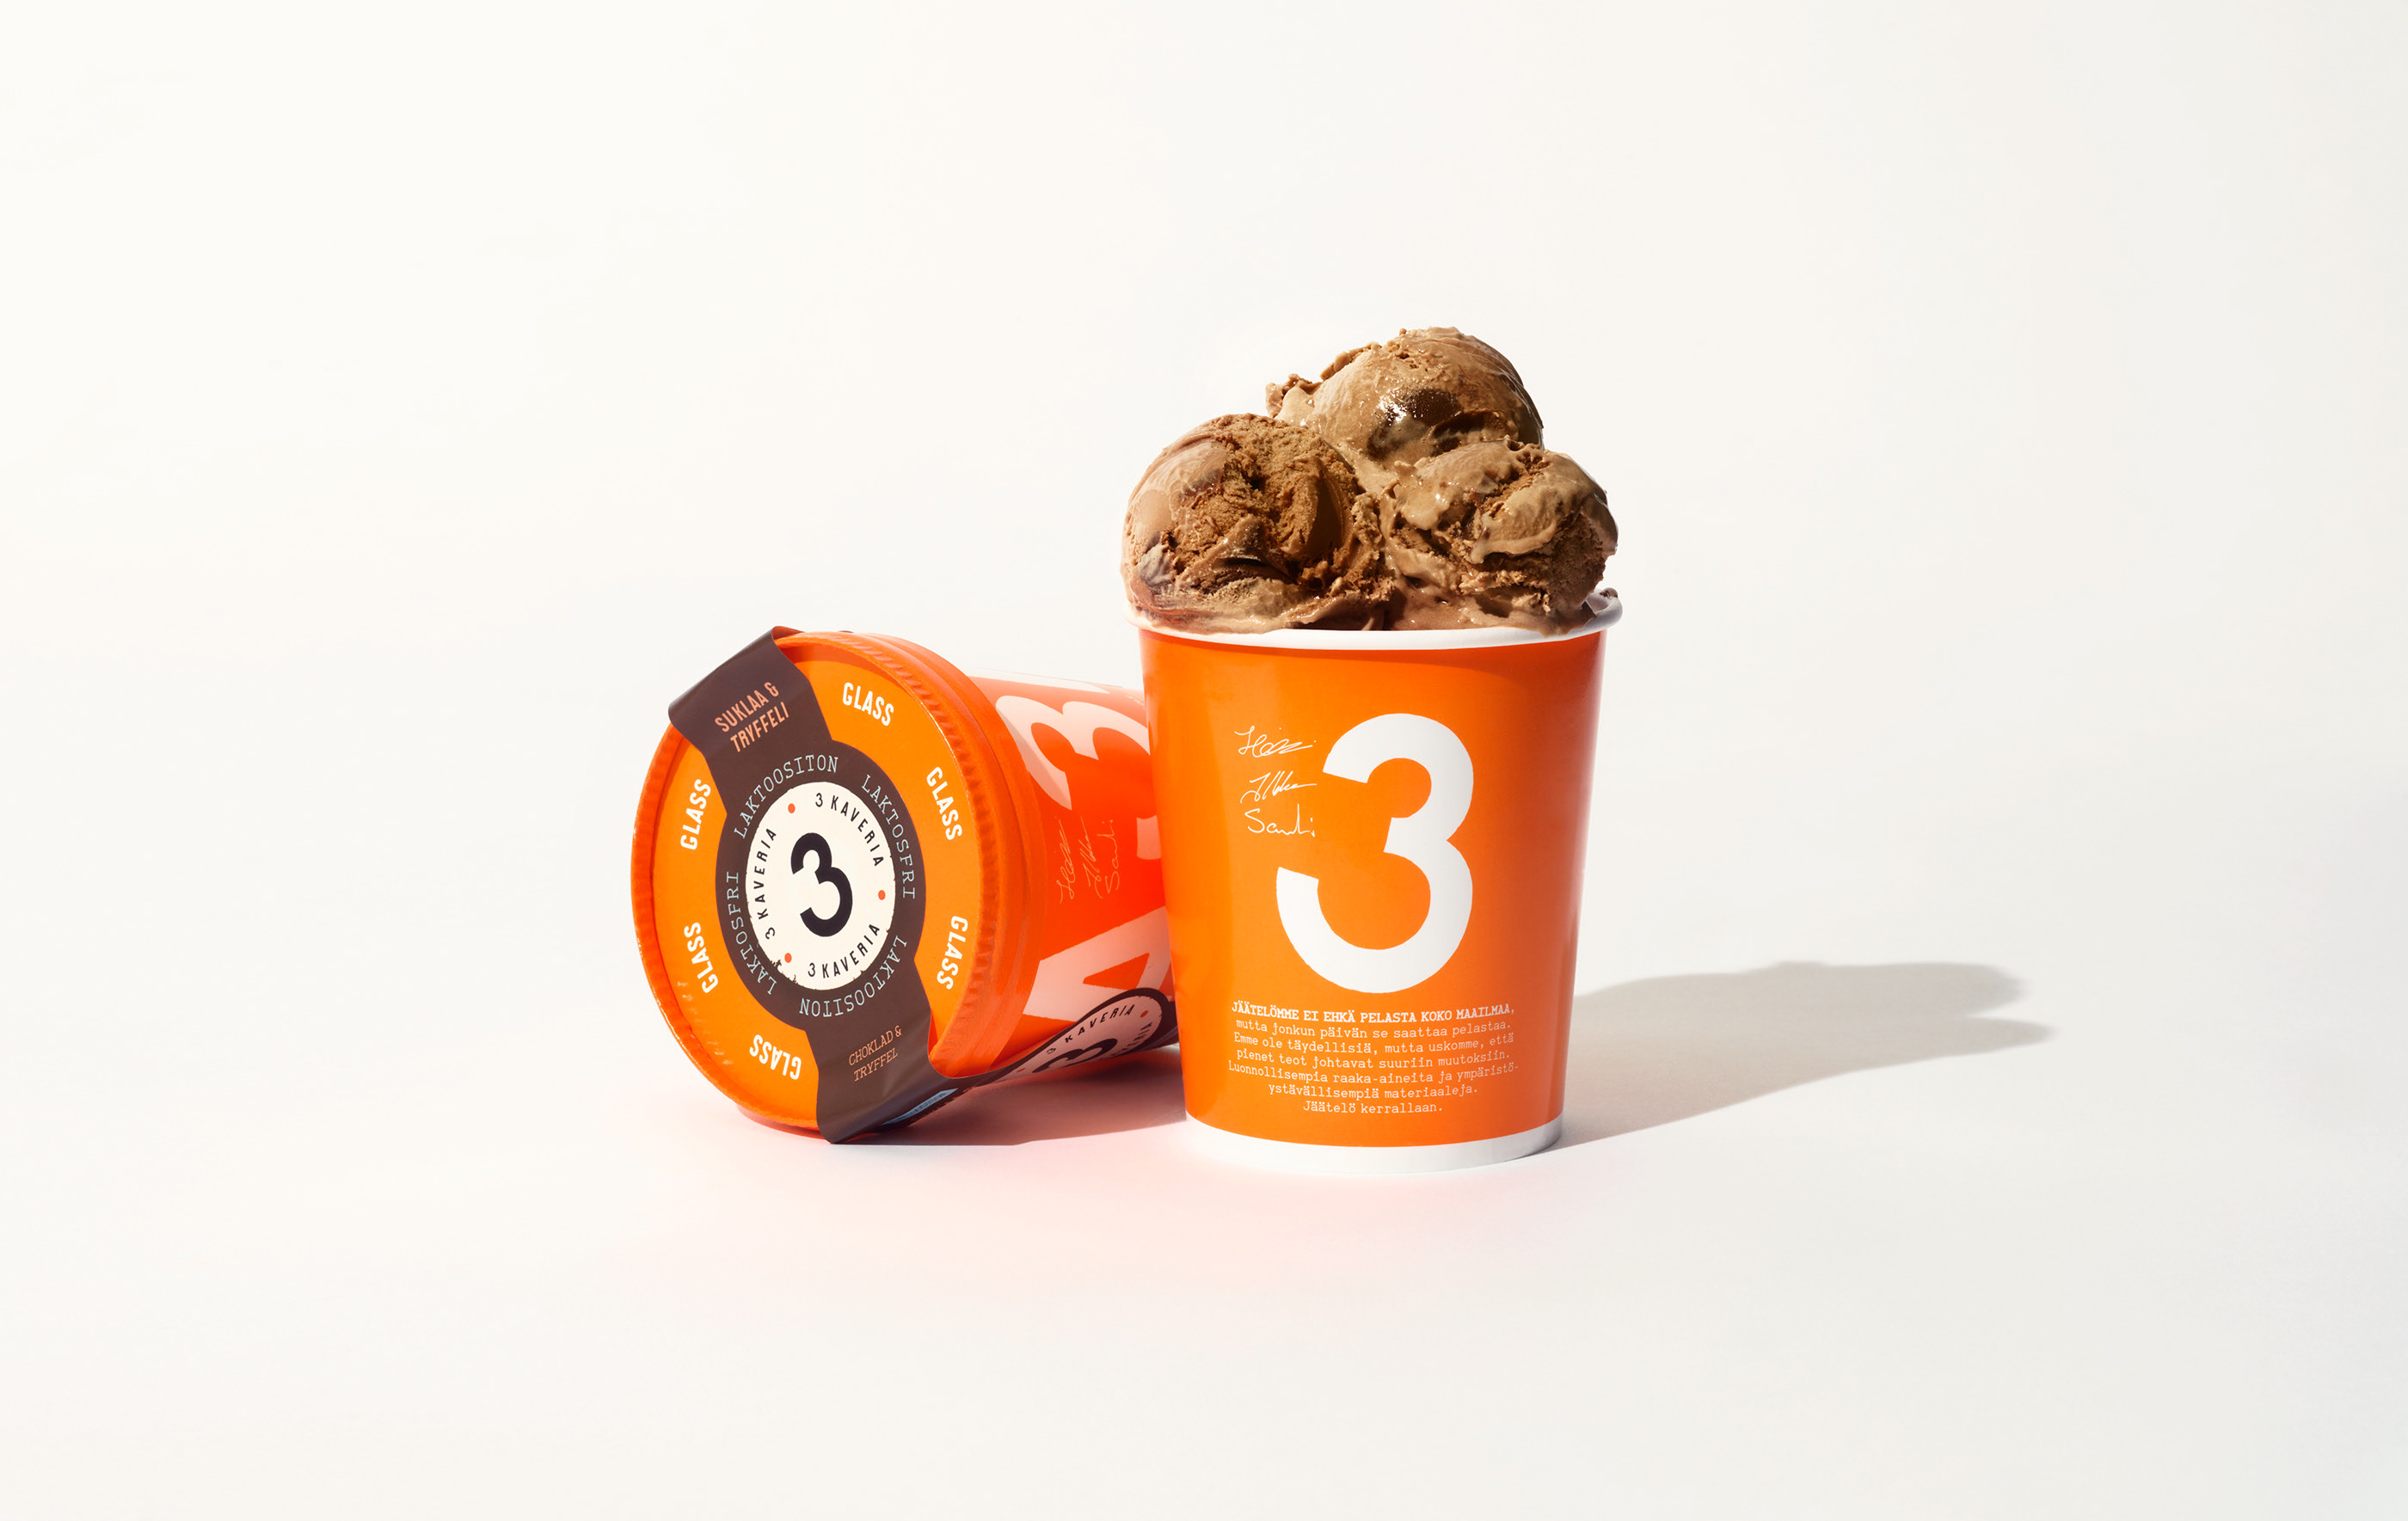 3 Kaverin冰淇淋品牌包装设计16设计网精选